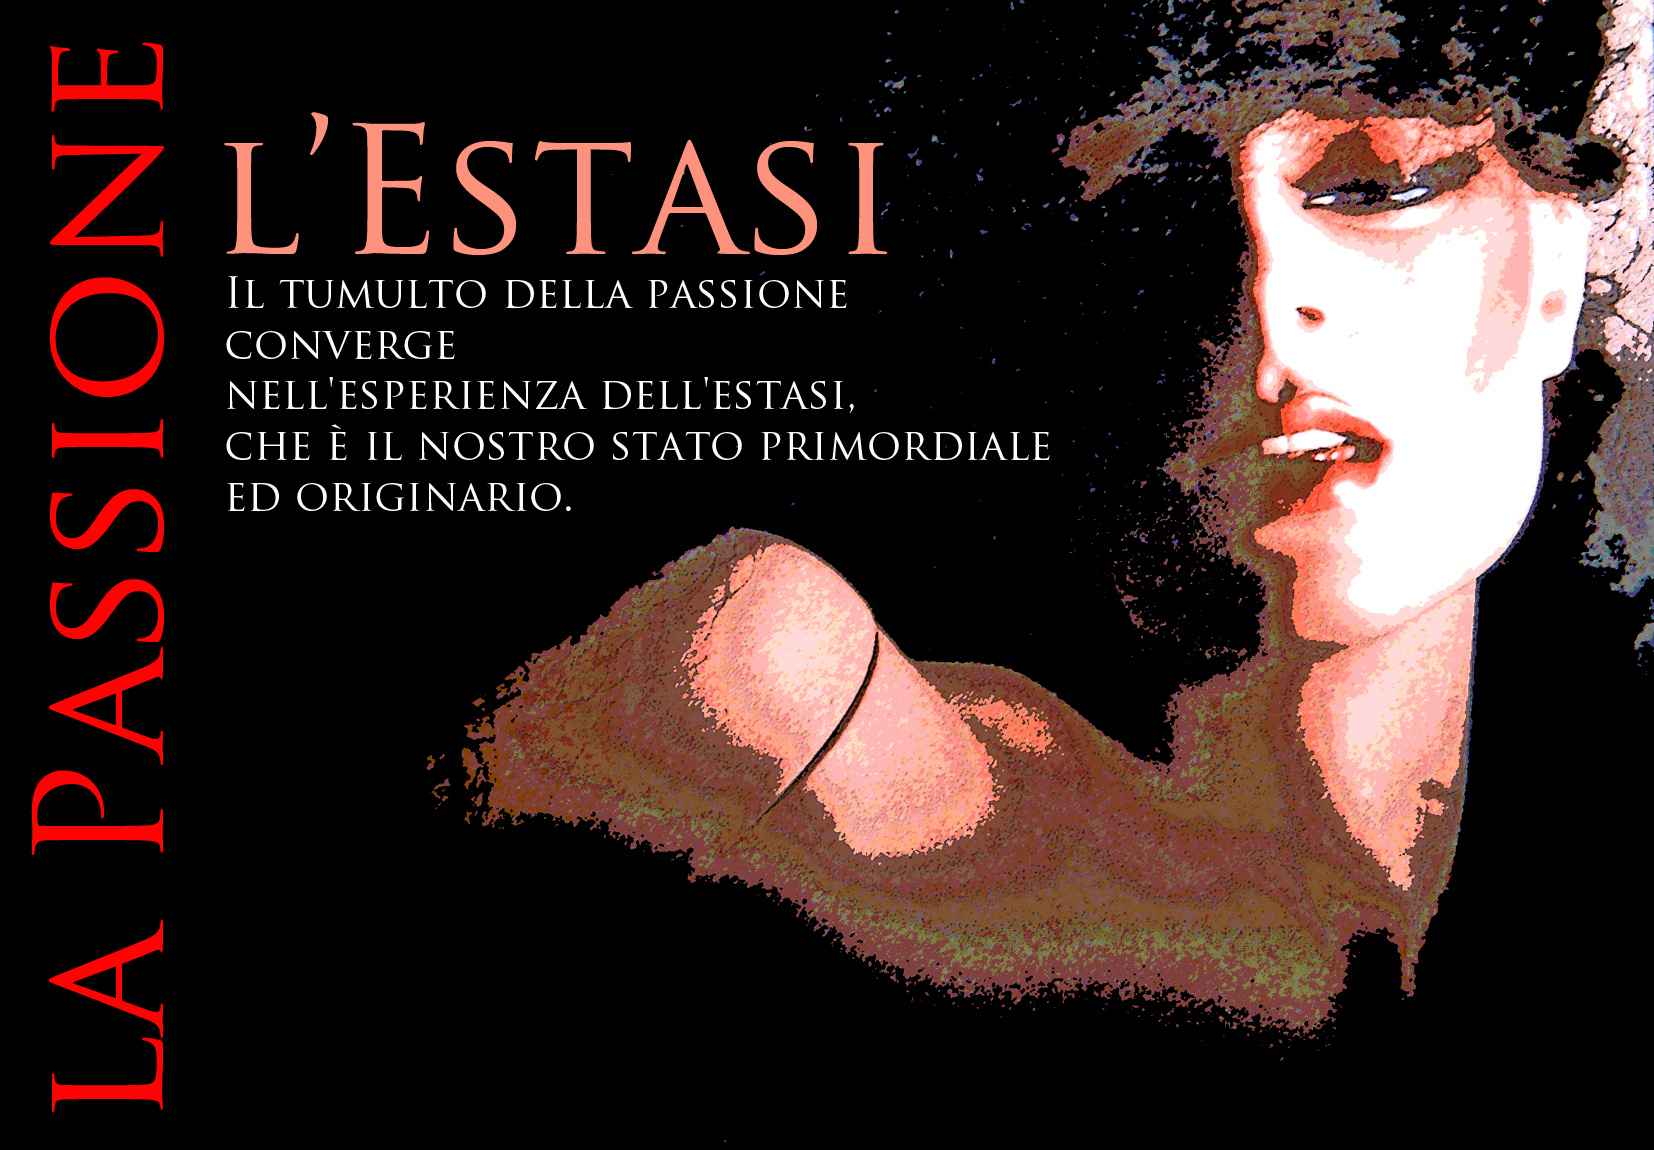 La Passione e l'Estasi. Poster - Foto di Renato Bosoni. Grafica di Massimo de Rigo (2011)